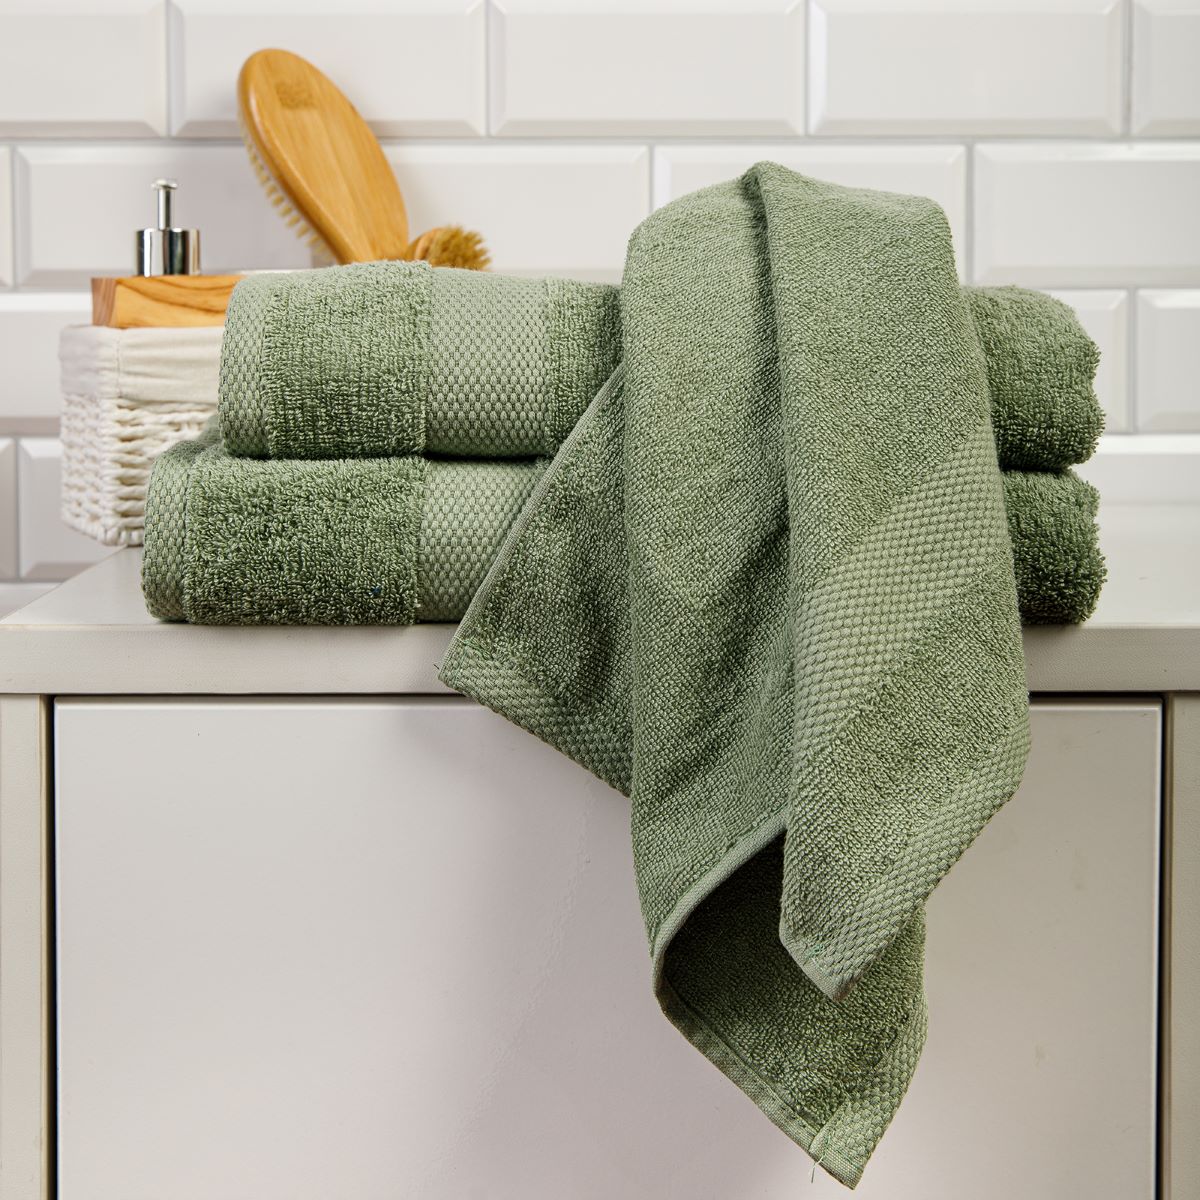 Размеры и качество материала банного полотенца